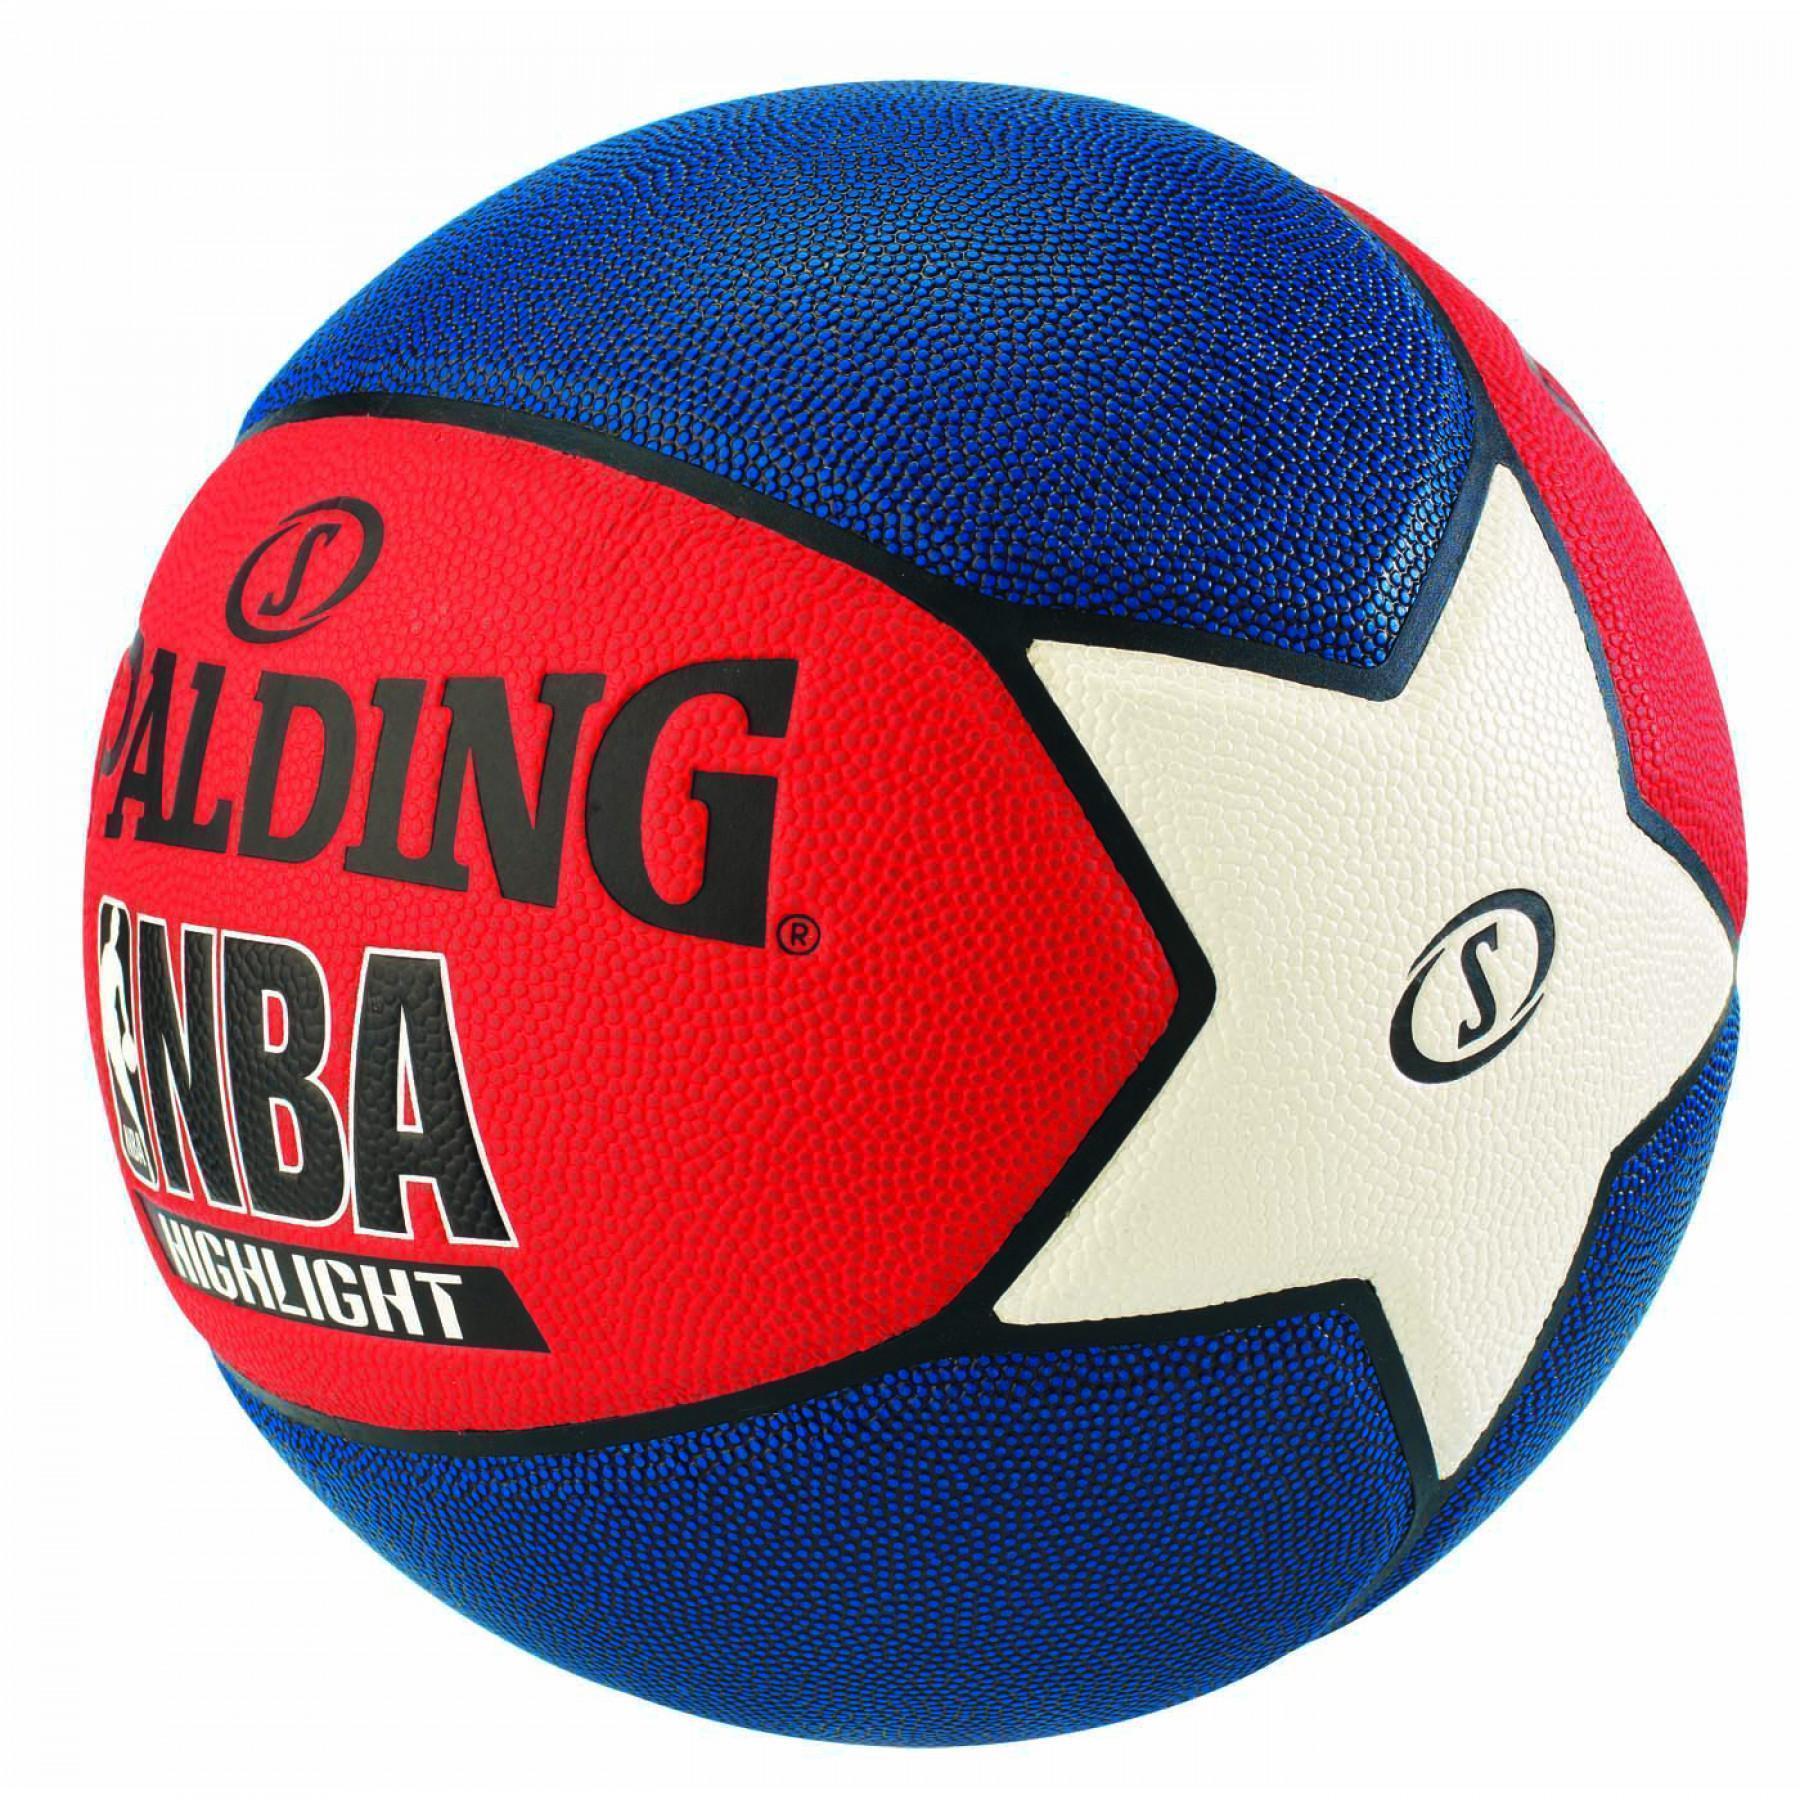 Balon Spalding NBA Highlight